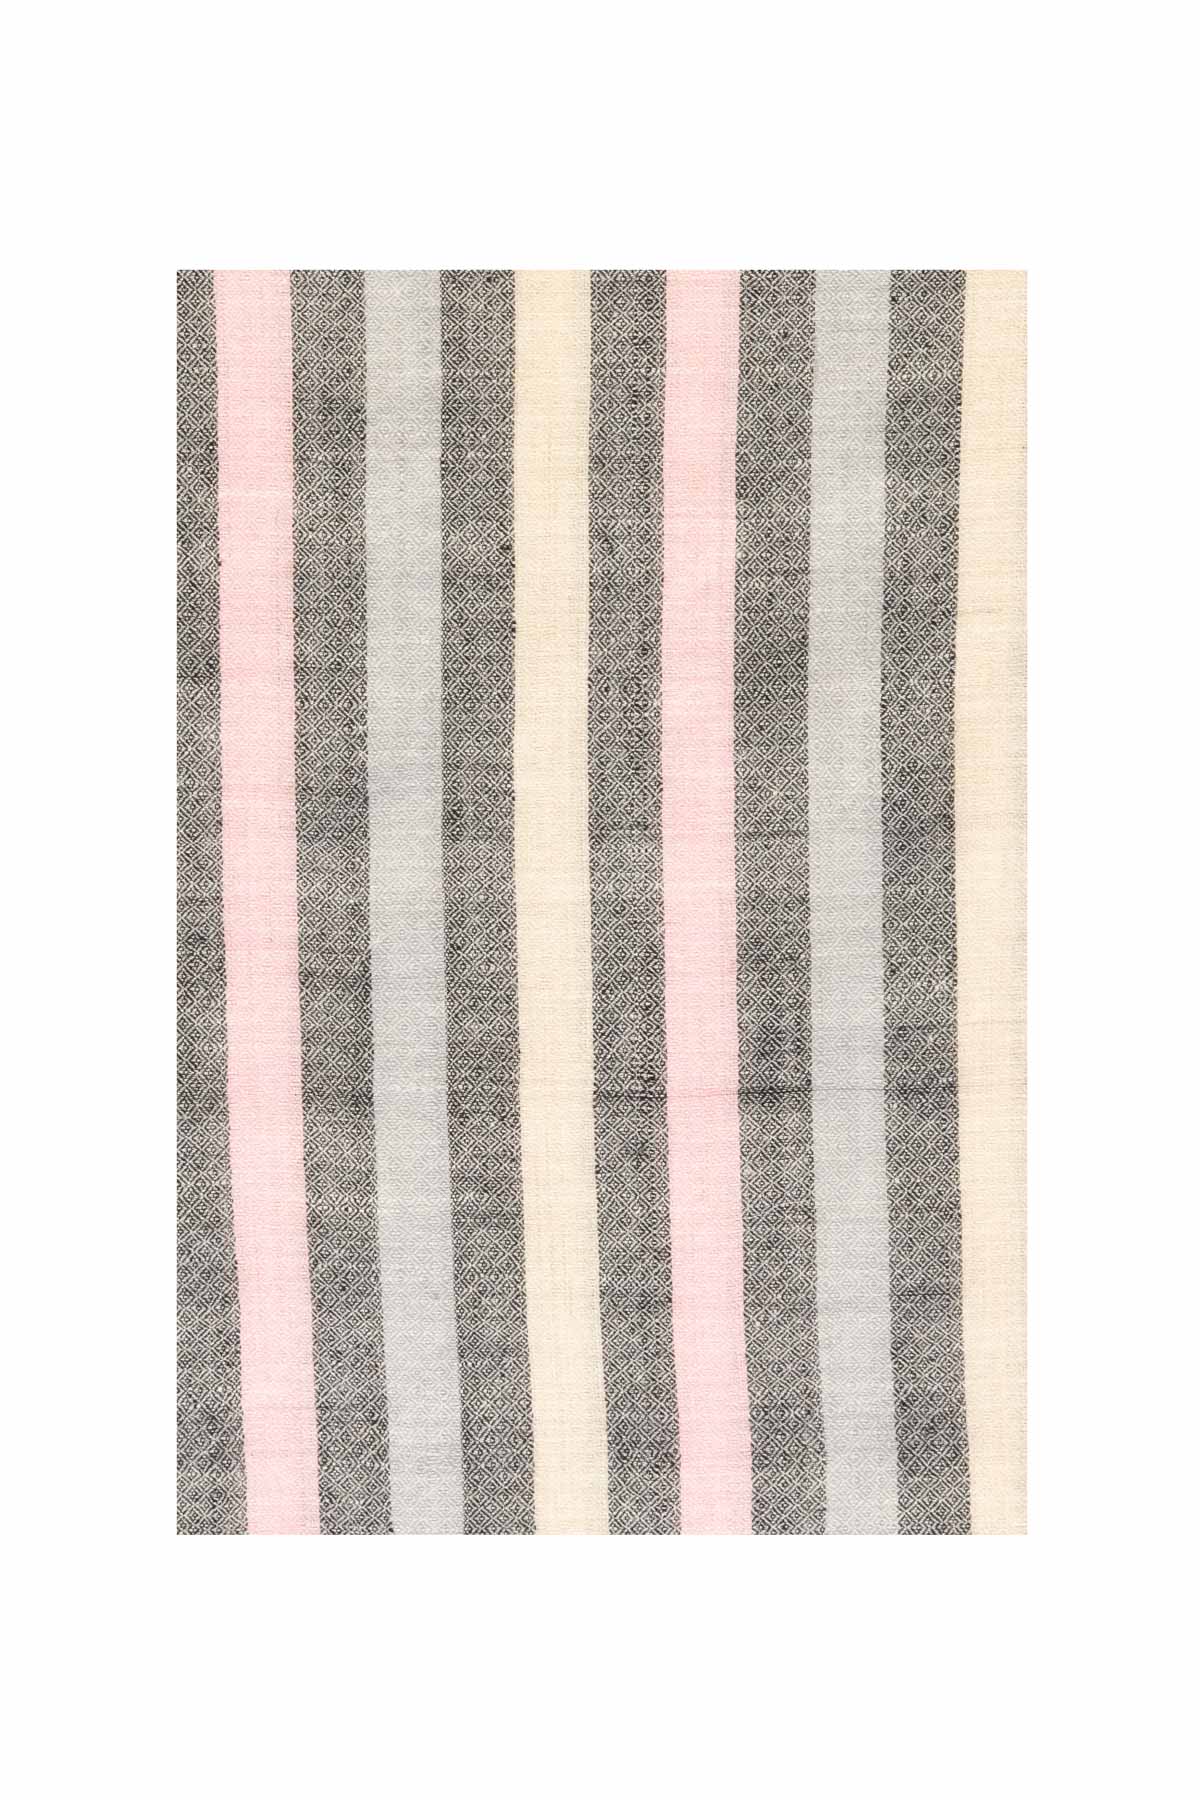 Multi stripe Pashmina Shawl- Pink, Black & Grey